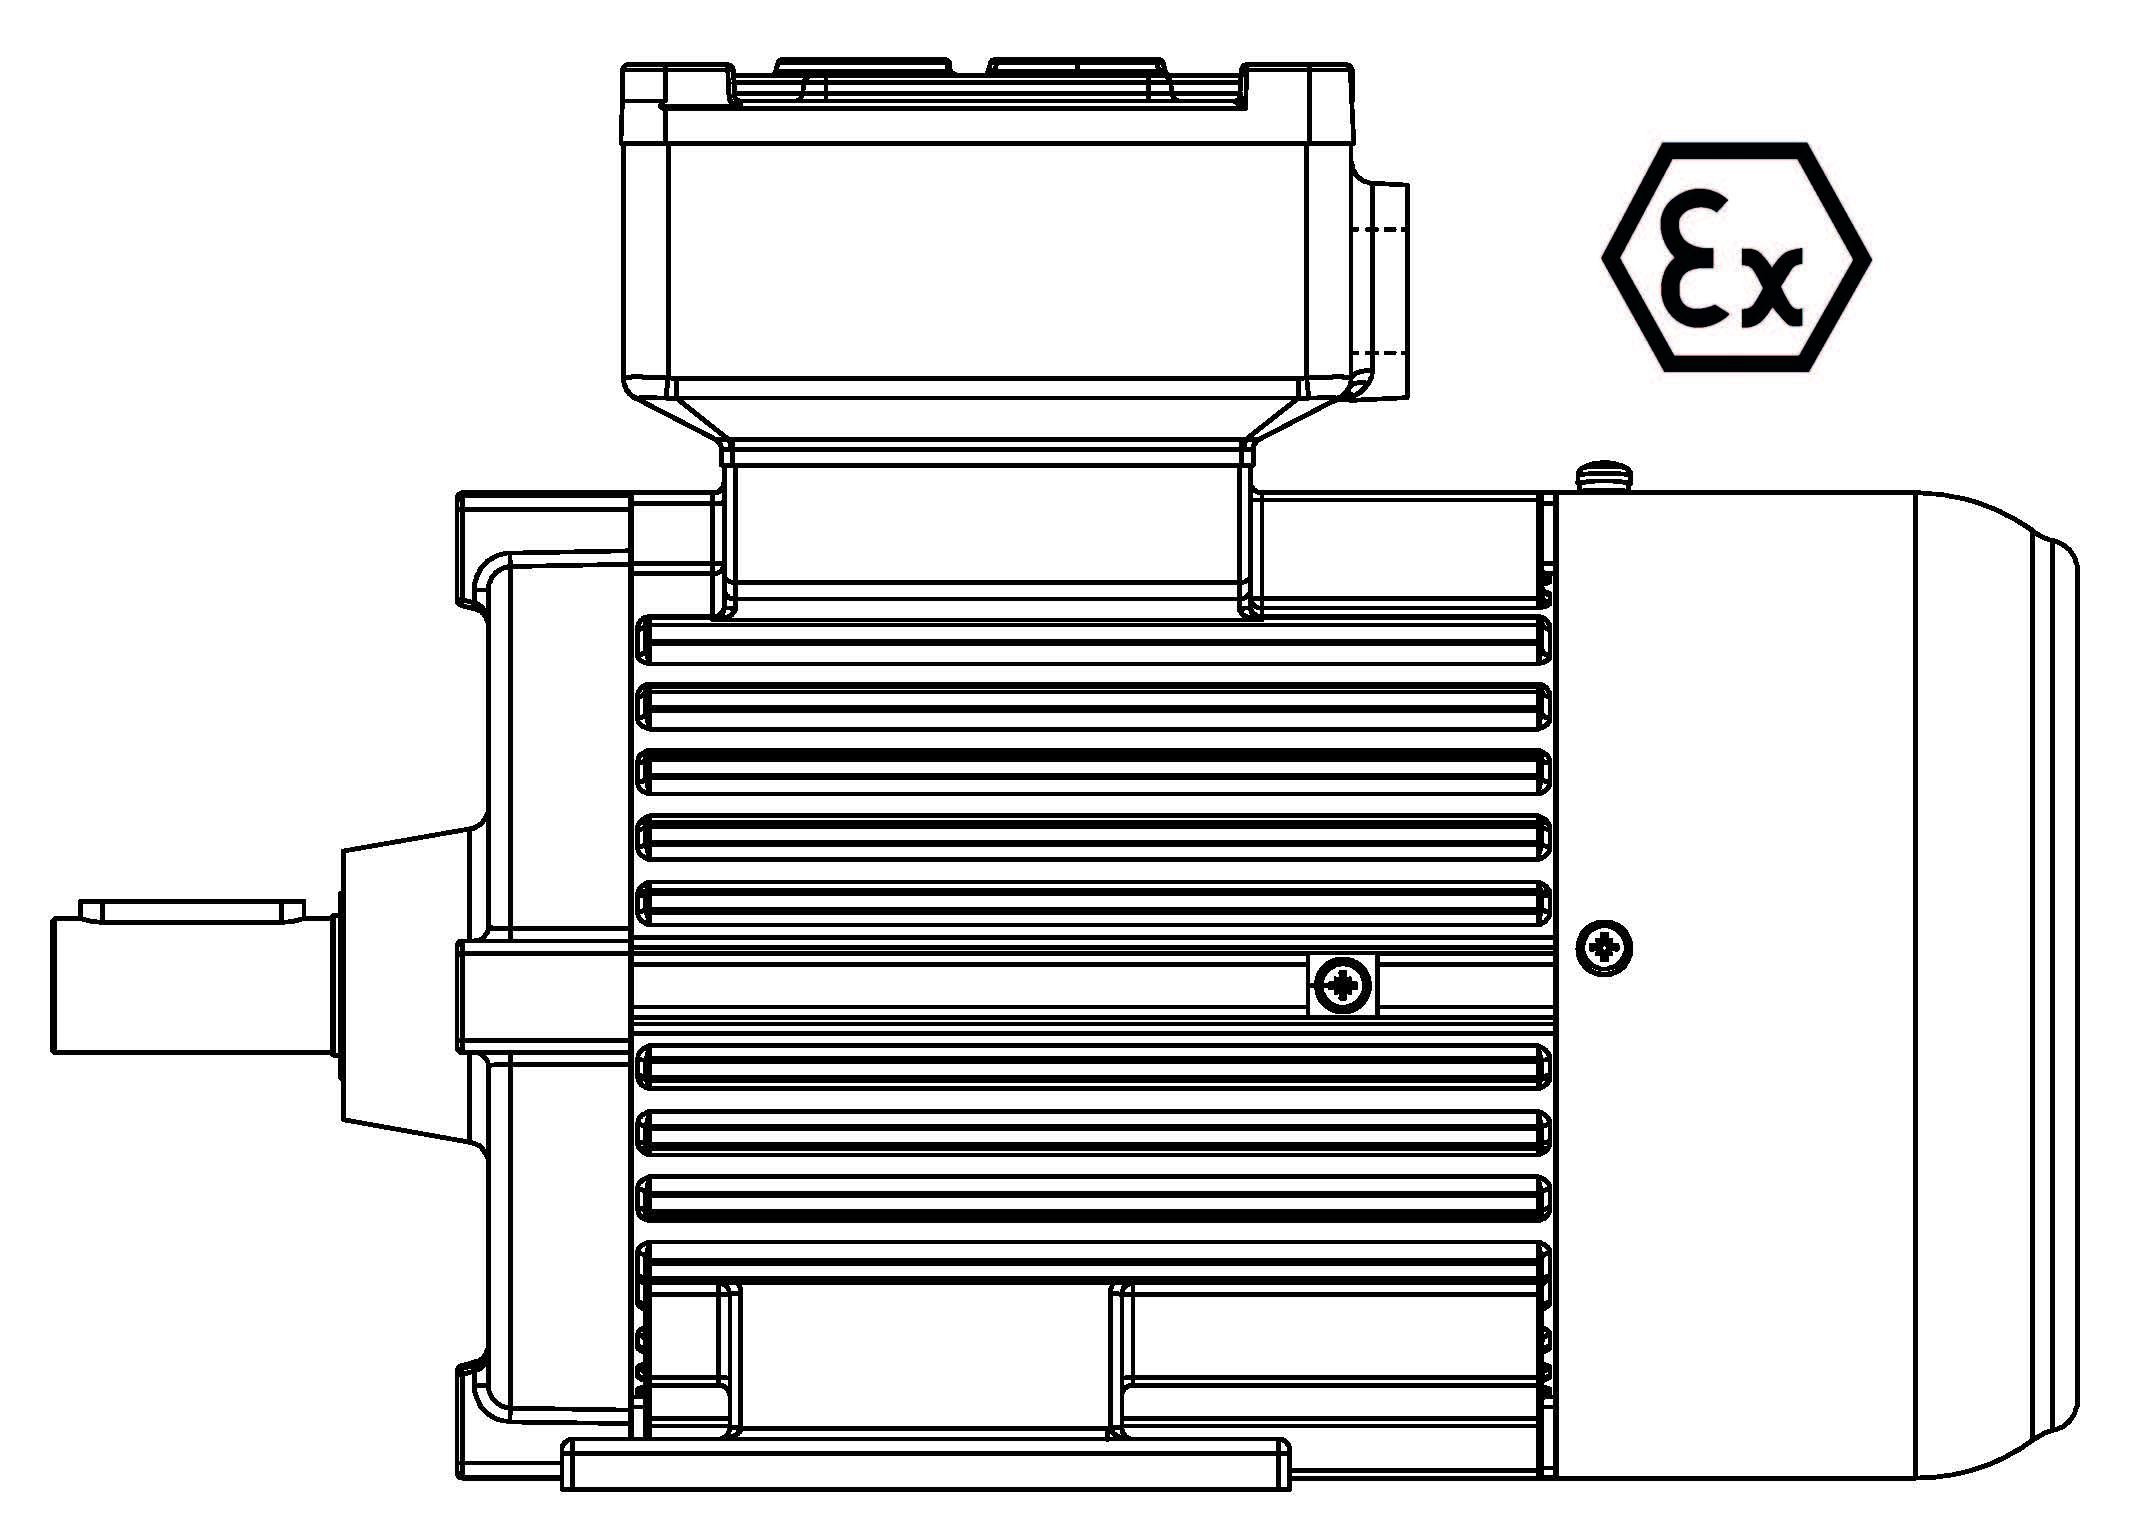 ATEX-132-2P 5,5 B3 400/3/50 Ex d IIB Эл.двигатель B3, разм. 132, 2900 об/мин, 5,5 кВт, 400 В, 3ф, 50 Гц